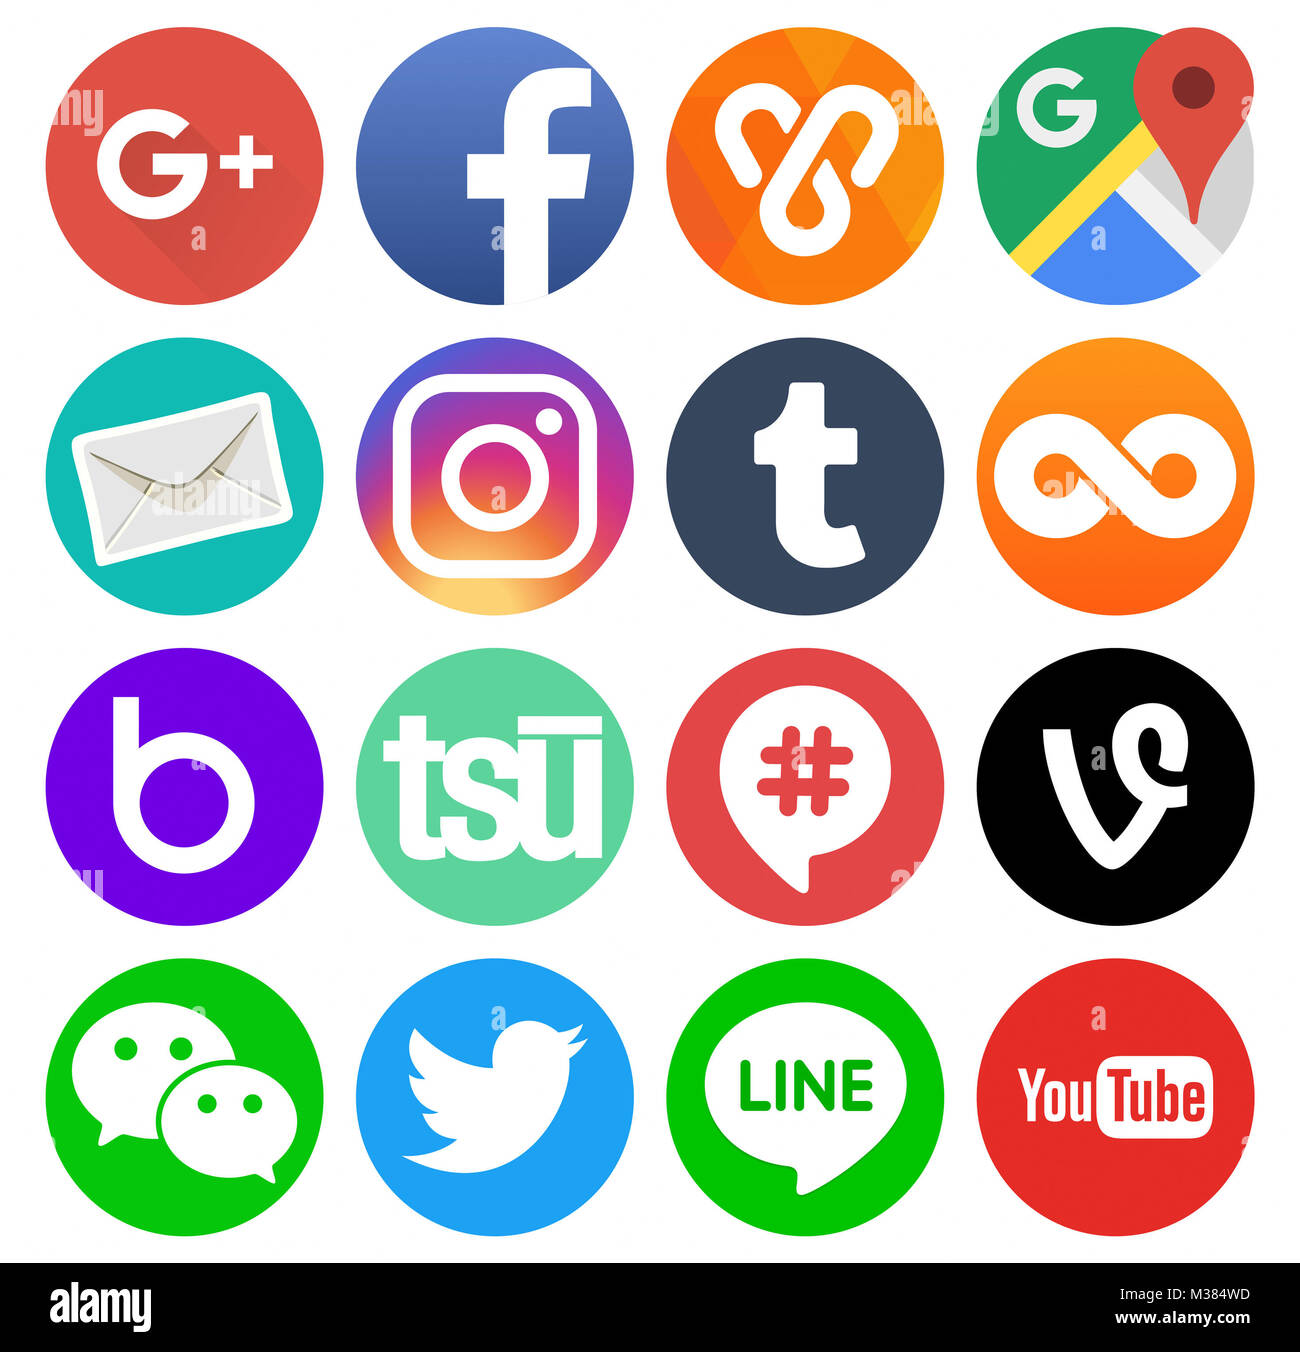 Kiev, Ukraine - le 11 août 2017 : Collection de médias sociaux populaires ronde logos imprimés sur du papier : Facebook, Twitter, Google Plus, Instagram, ligne, vous Banque D'Images